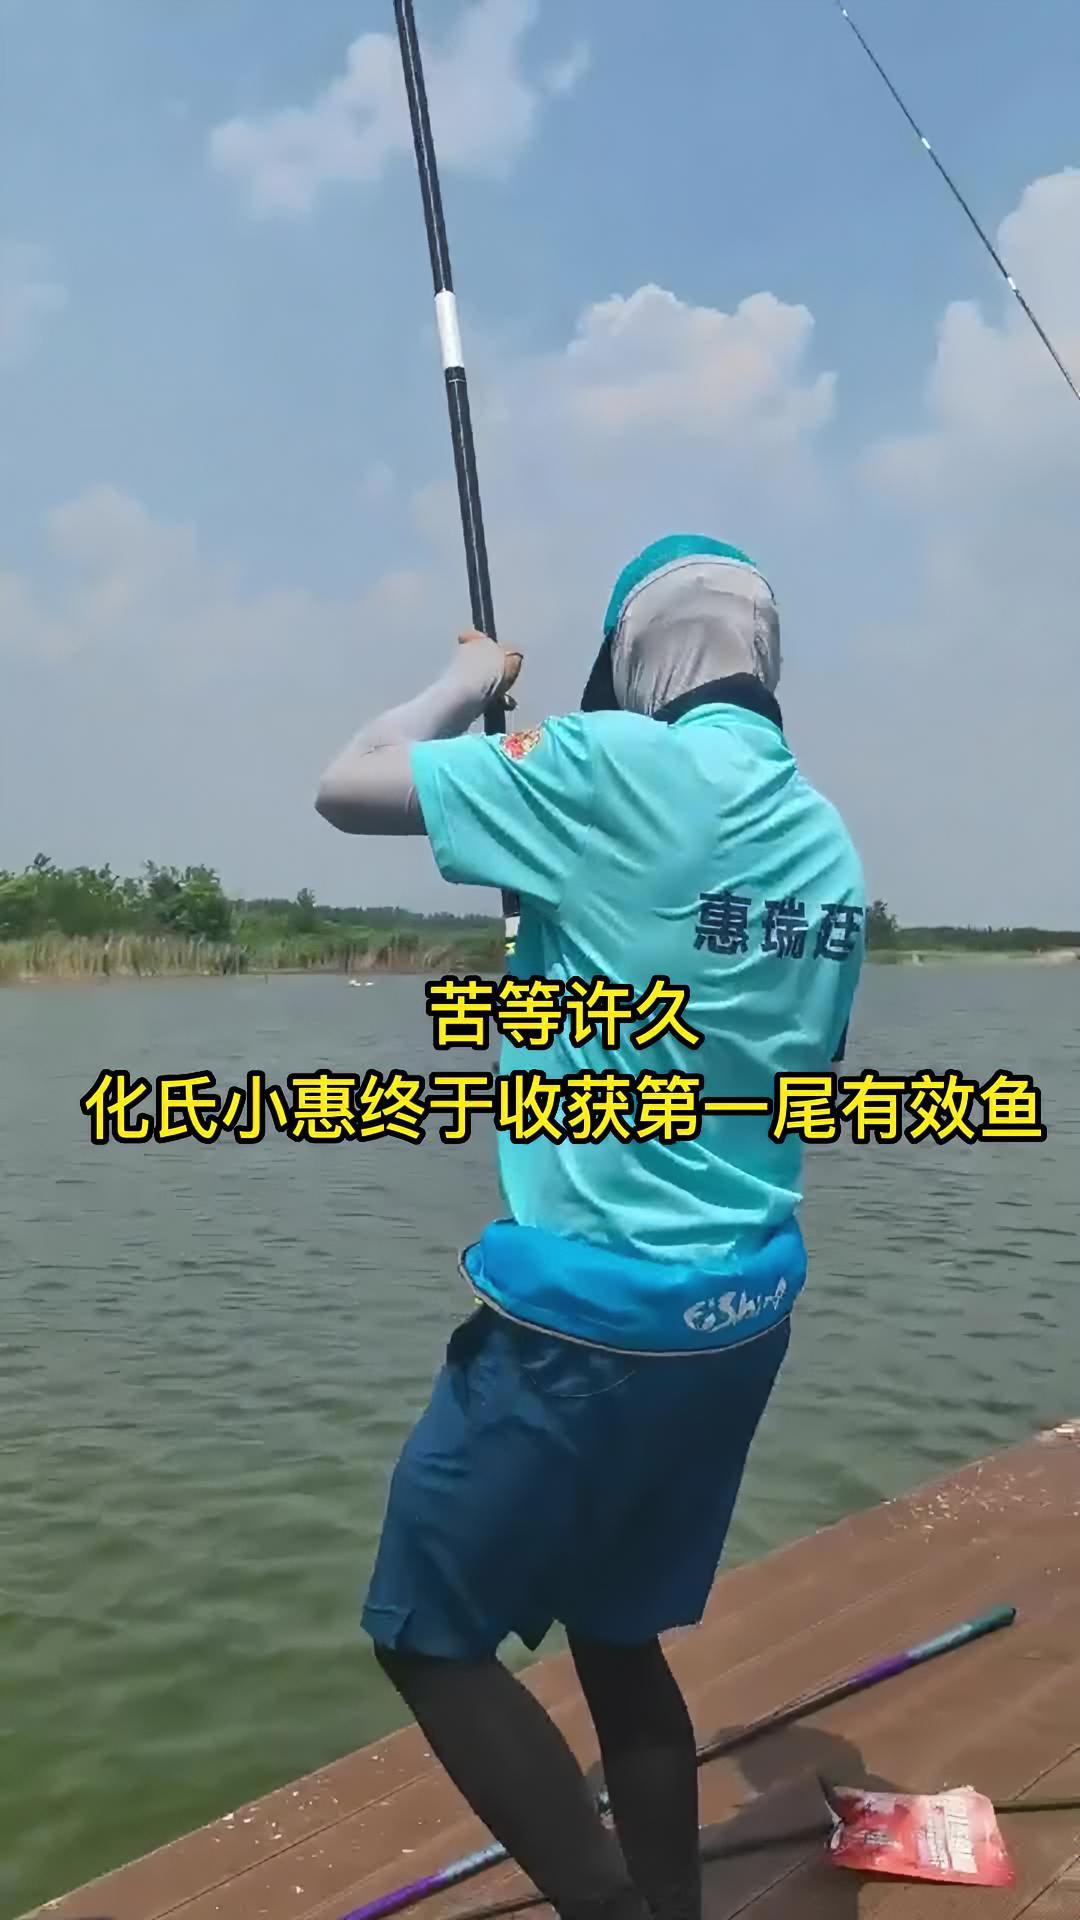 2022王者之战 苦等许久@化氏小惠终于收获第一尾有效鱼 钓鱼人